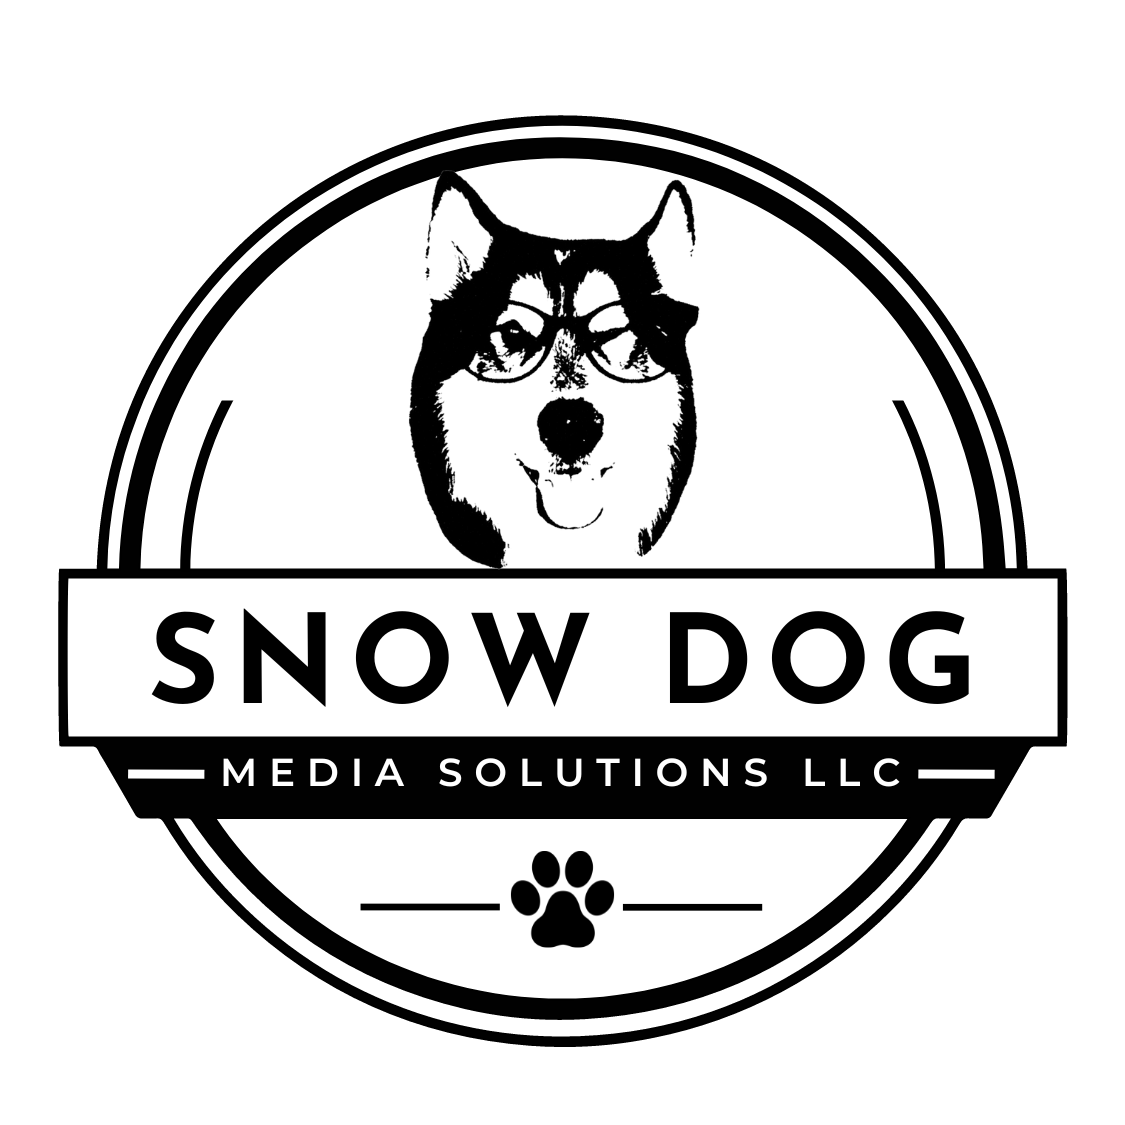 Snow Dog Media Solutions